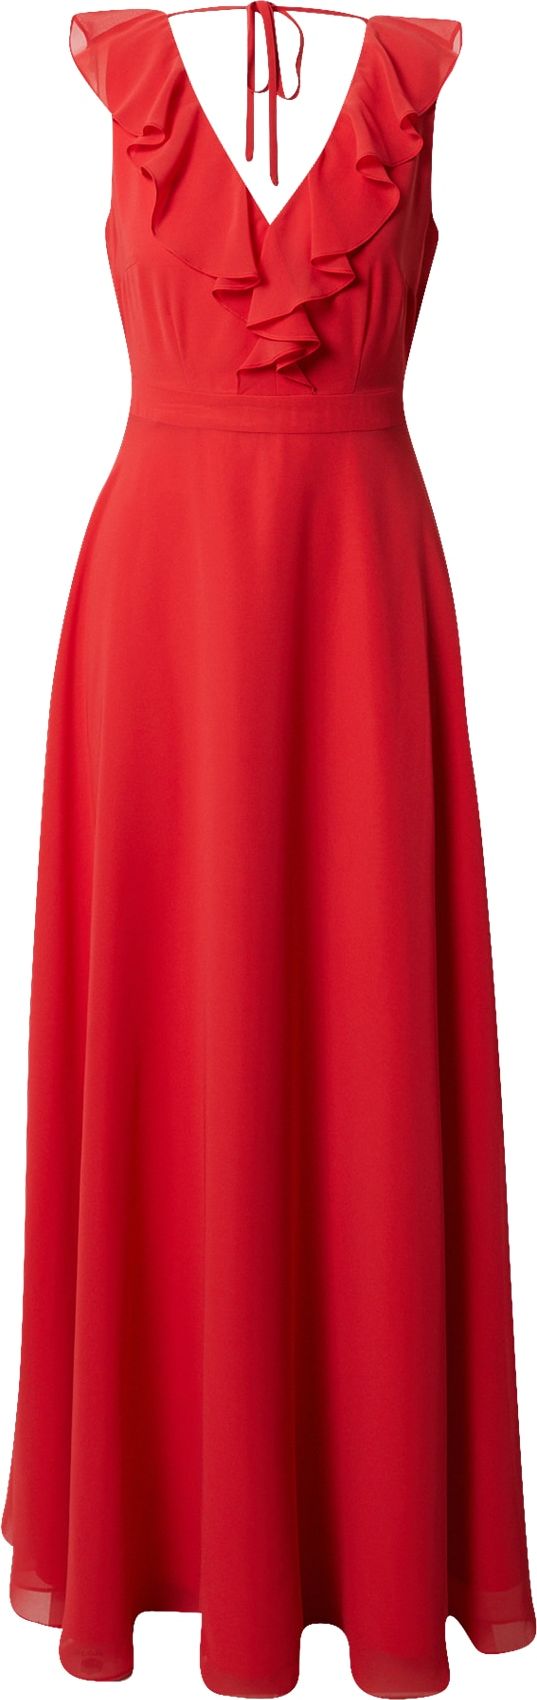 SWING Společenské šaty červená